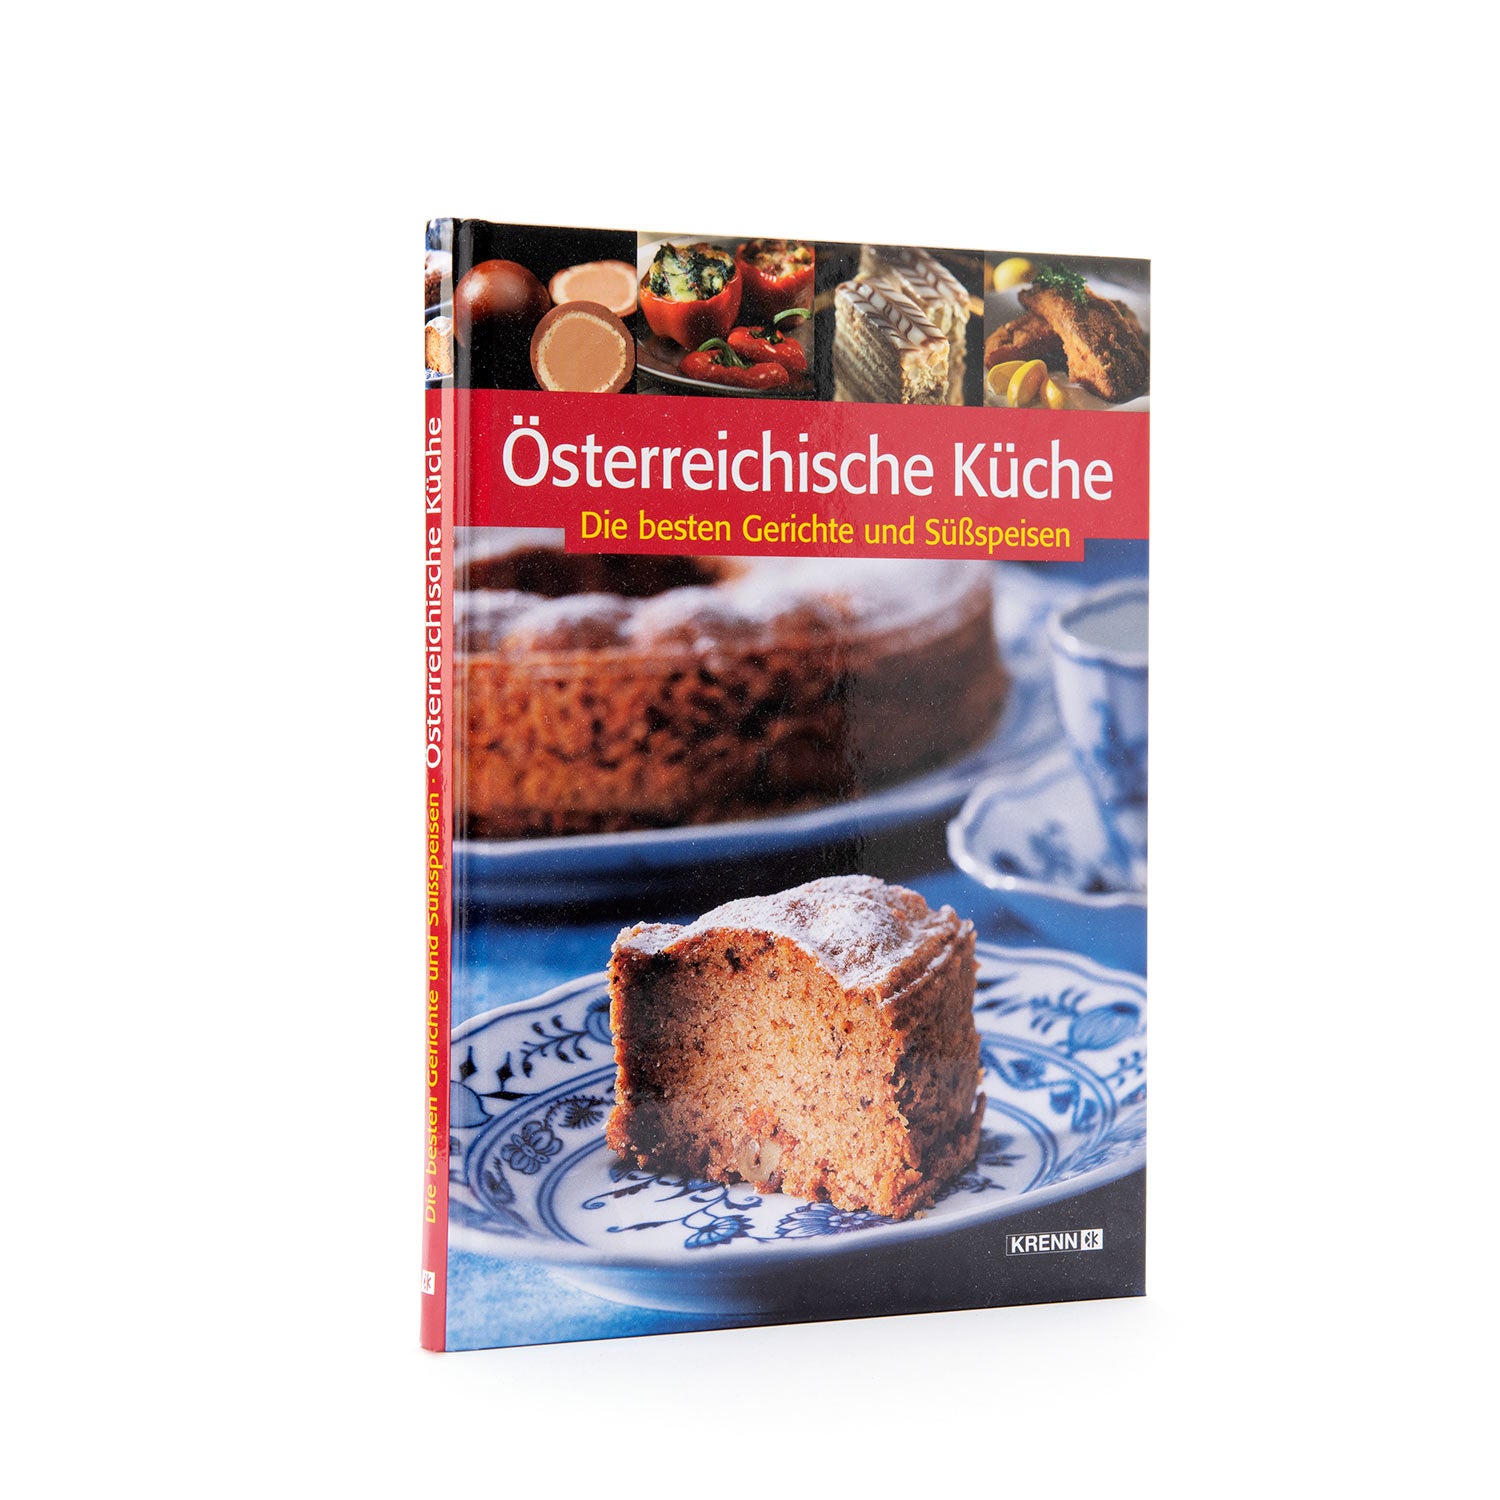 book, austria, austrian, cake, cookbook, cook, bake, krenn, osterreichische, kuche, die, besten, gerichte